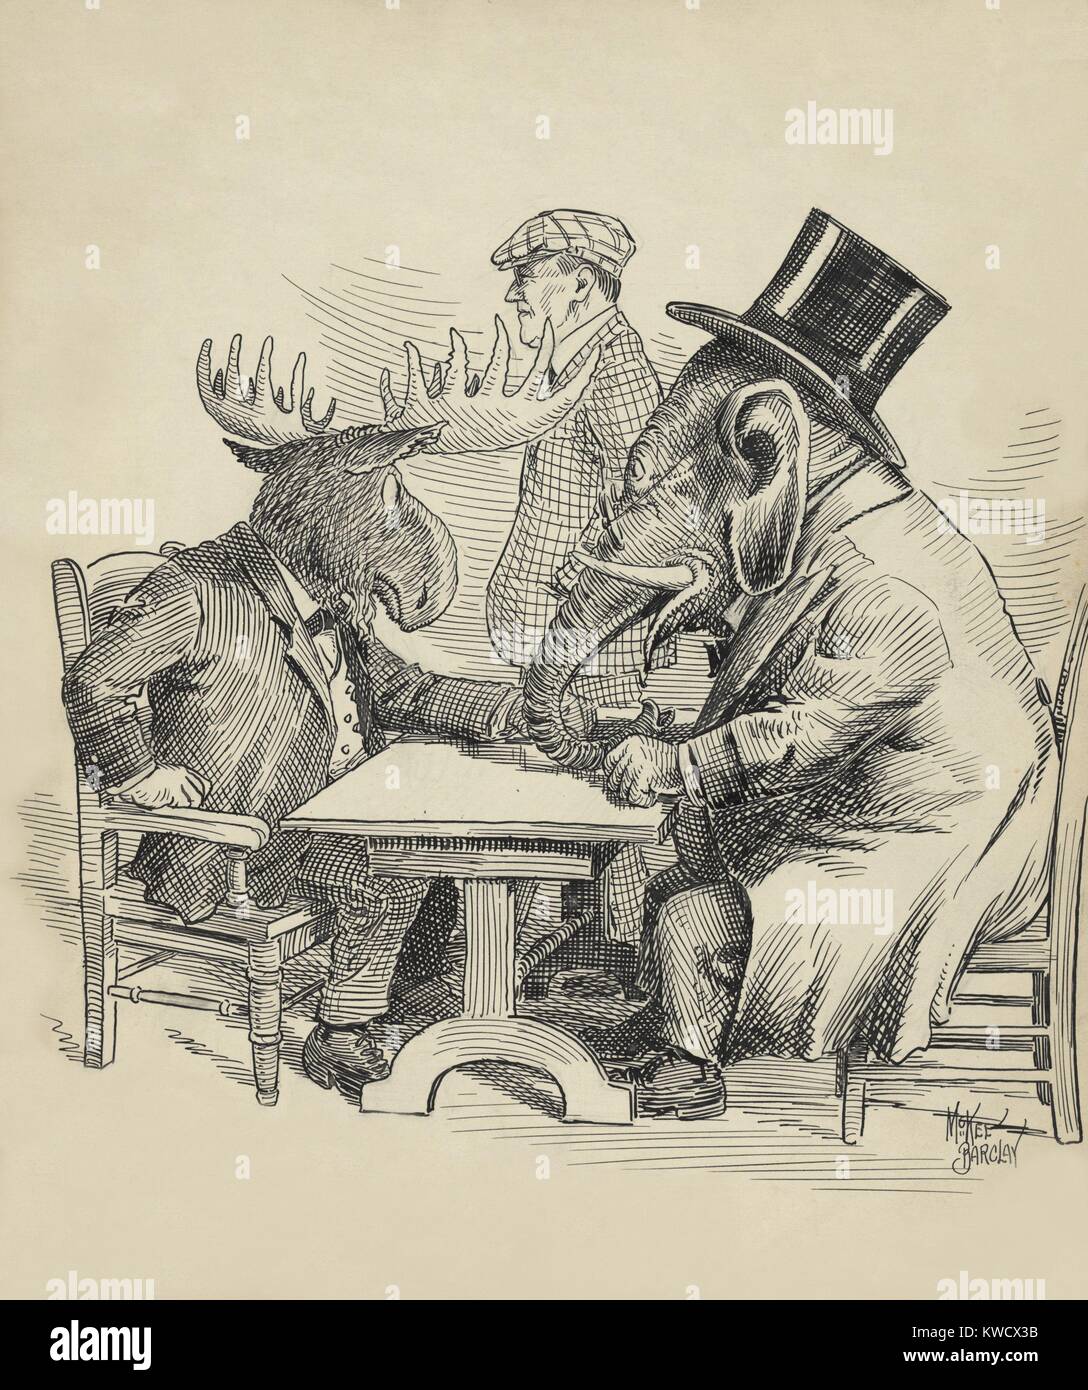 Caricatura Política acerca de la elección presidencial de 1912 por Barclay McKee. Las conferencias con el elefante republicano Theodore Roosevelt rebelde Bull Moose, como paseos por el Demócrata Woodrow Wilson (BSLOC 2017 2 130) Foto de stock